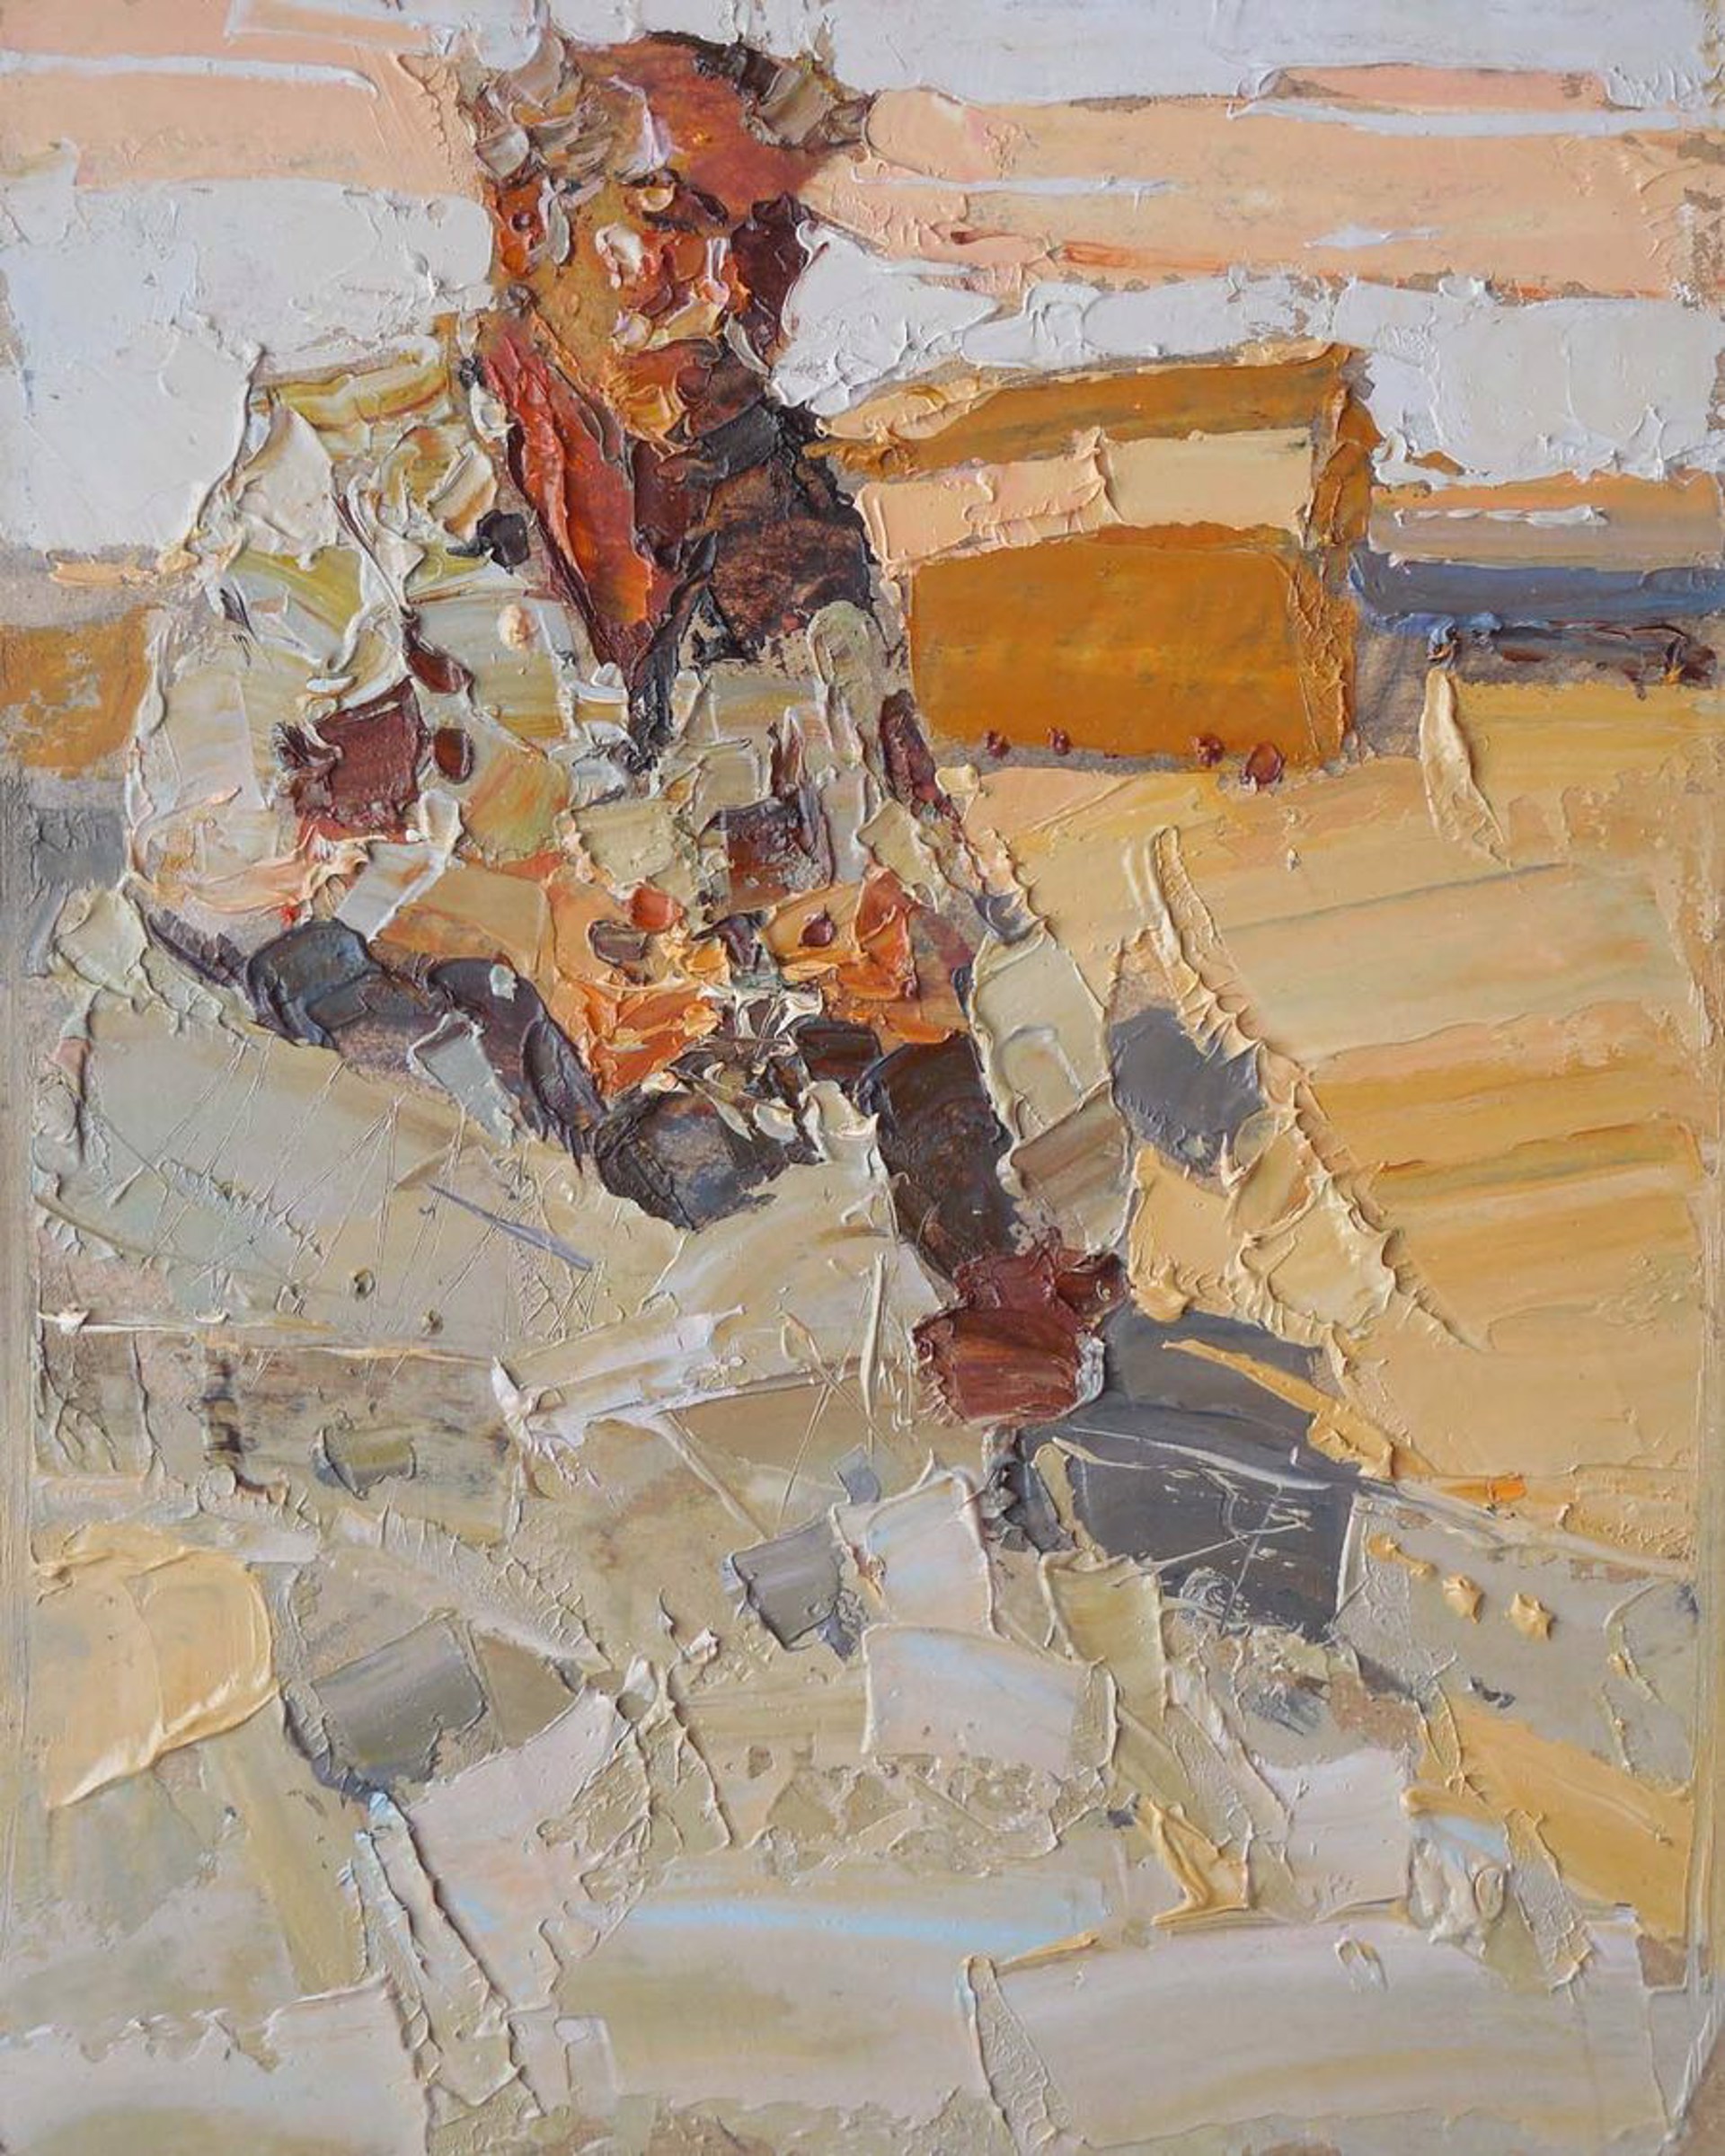 Old Fisherman by Daniil Volkov